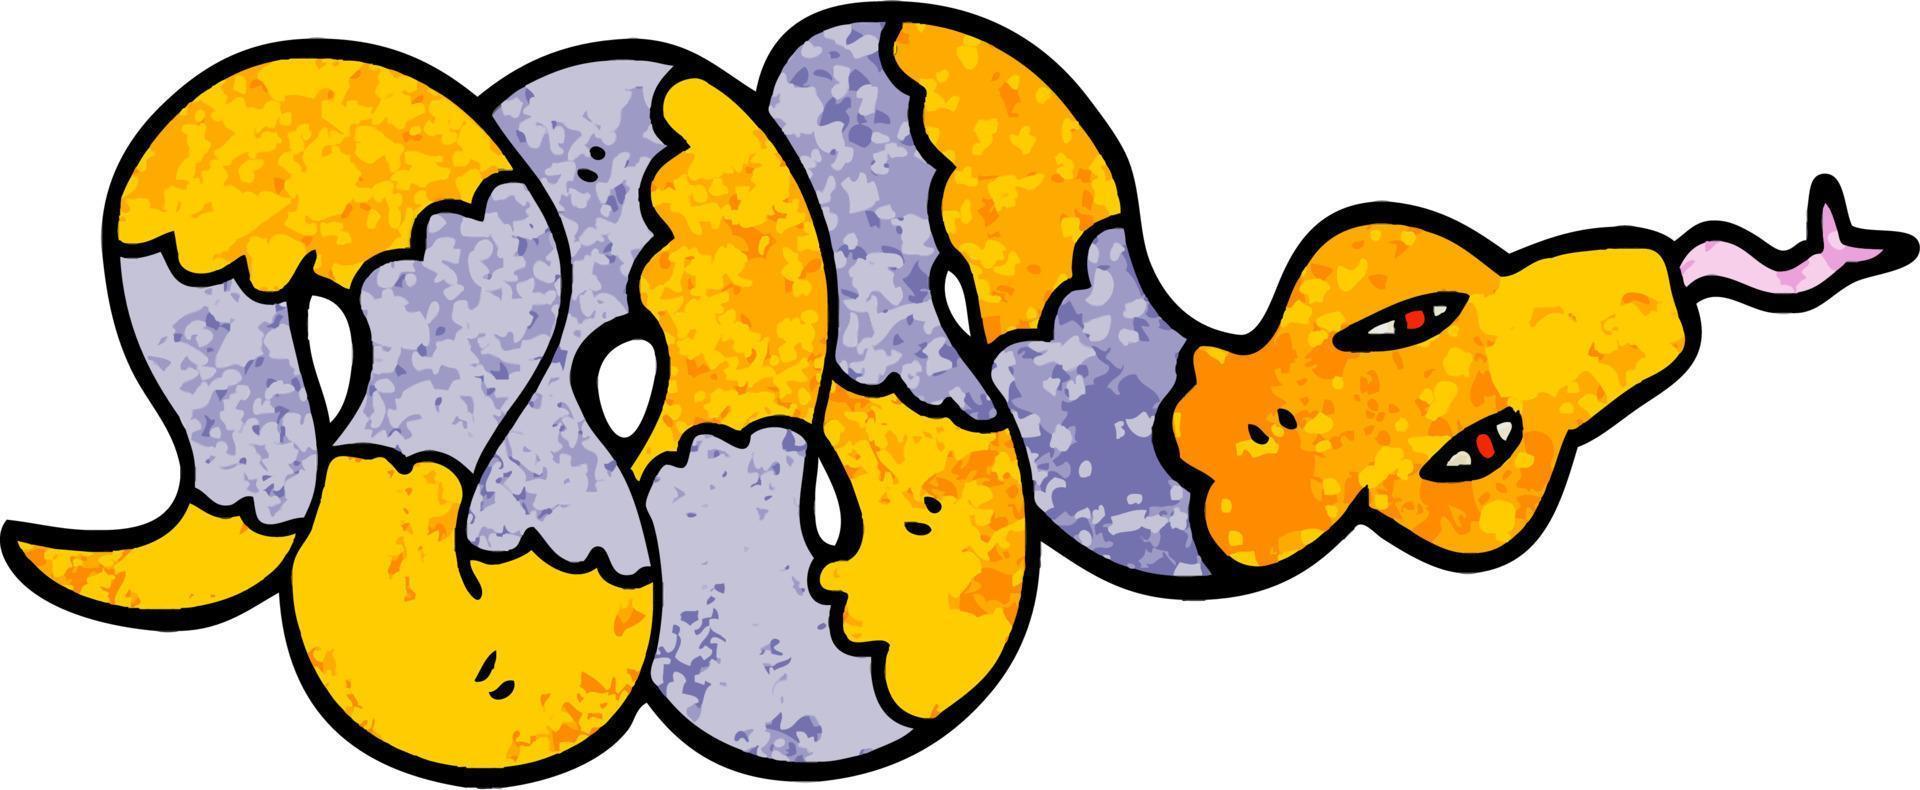 grunge texturé illustration dessin animé serpent venimeux vecteur